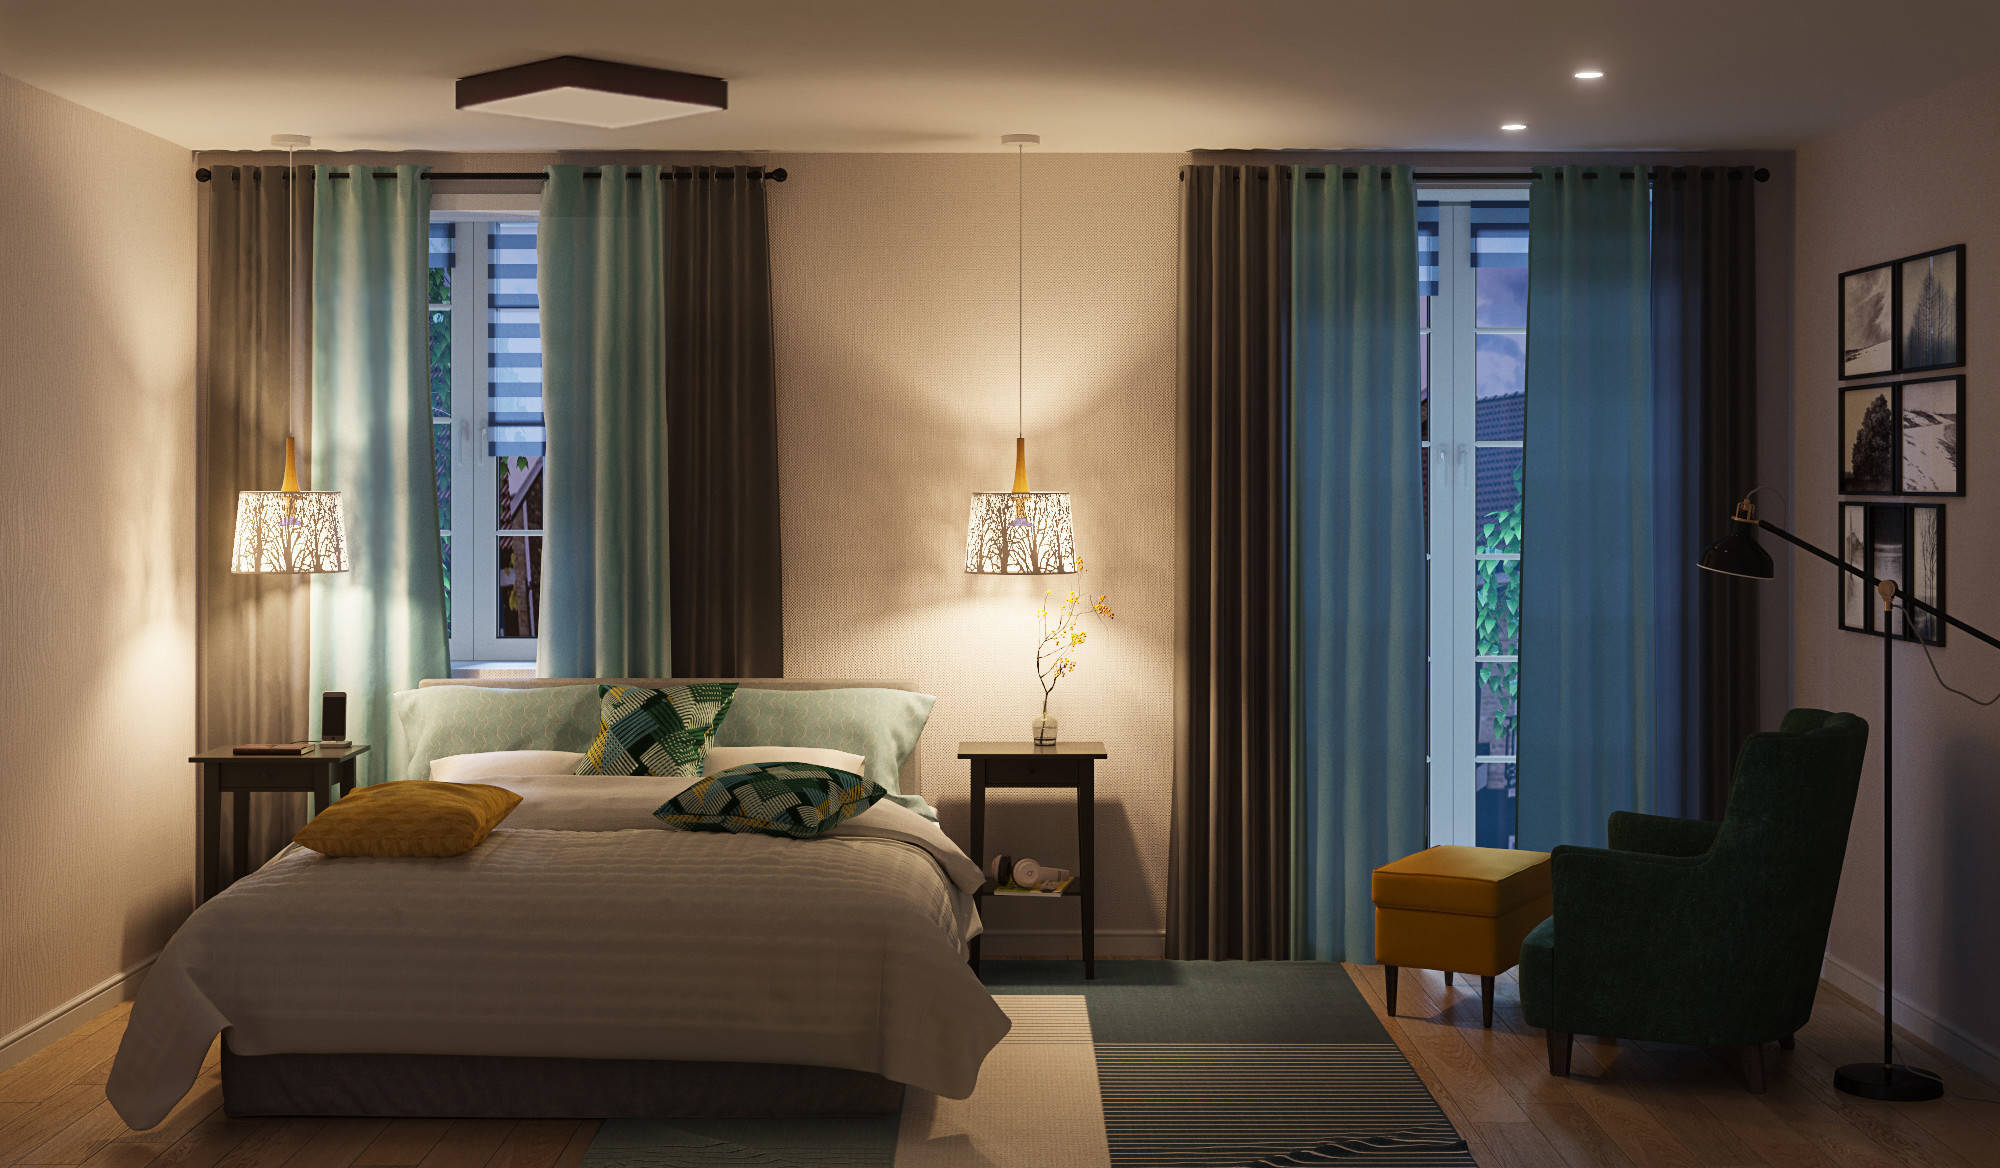 Интерьер спальни cветовыми линиями, рейками с подсветкой, подсветкой настенной и подсветкой светодиодной в скандинавском стиле